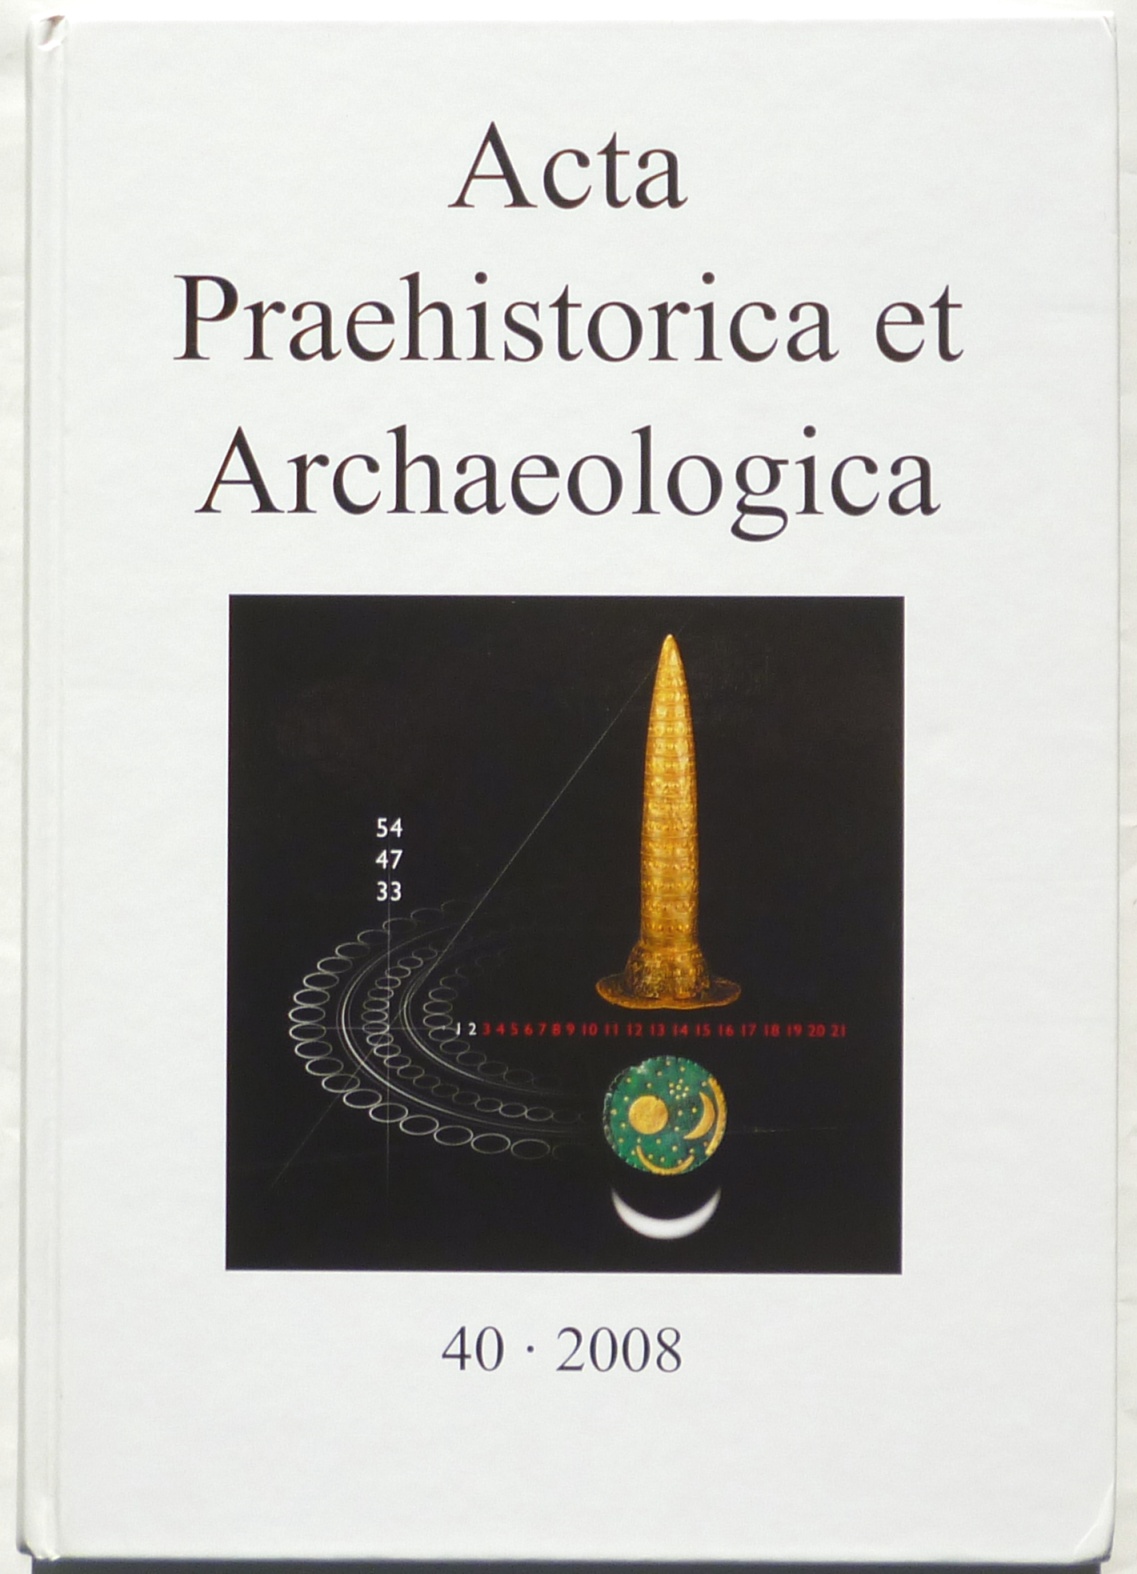 Astronomische Orientierung und Kalender in der Vorgeschichte. - Acta Praehistorica et Archaeologica 40 (2008). - Menghin, Wilfried (ed.)